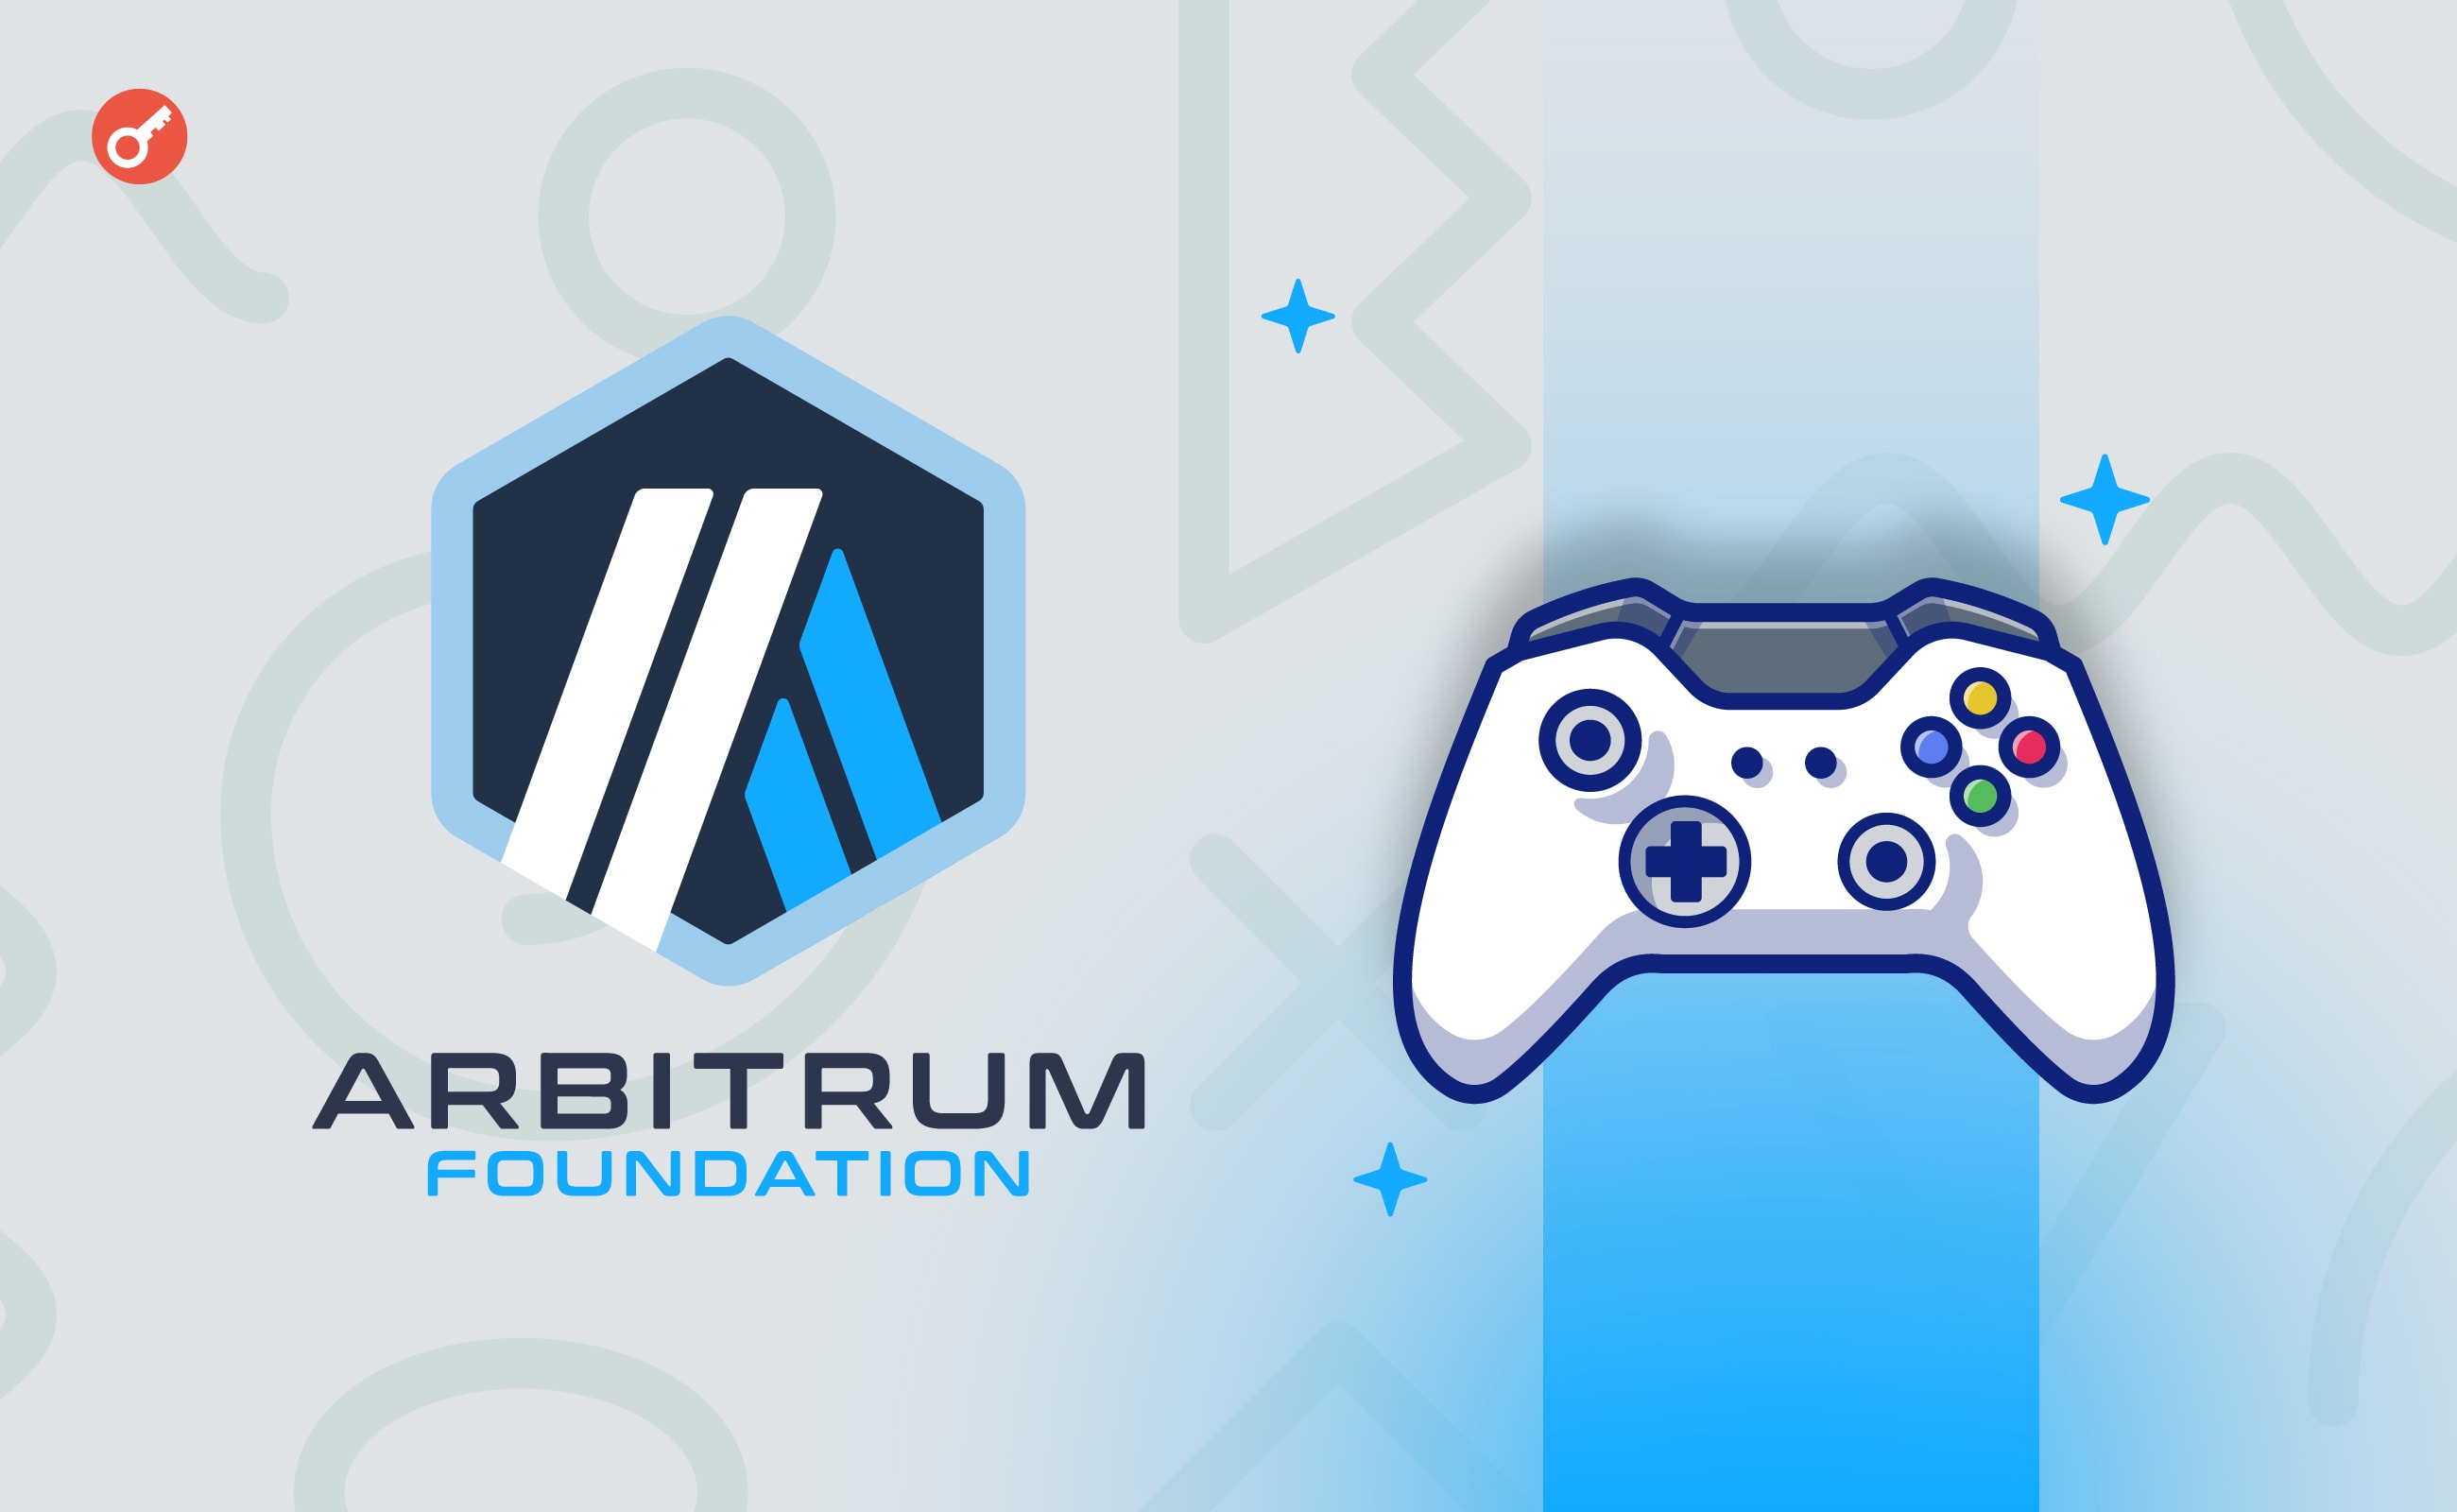 Arbitrum Foundation інвестуватиме 200 млн ARB в просування ігрових блокчейн-проєктів. Головний колаж новини.